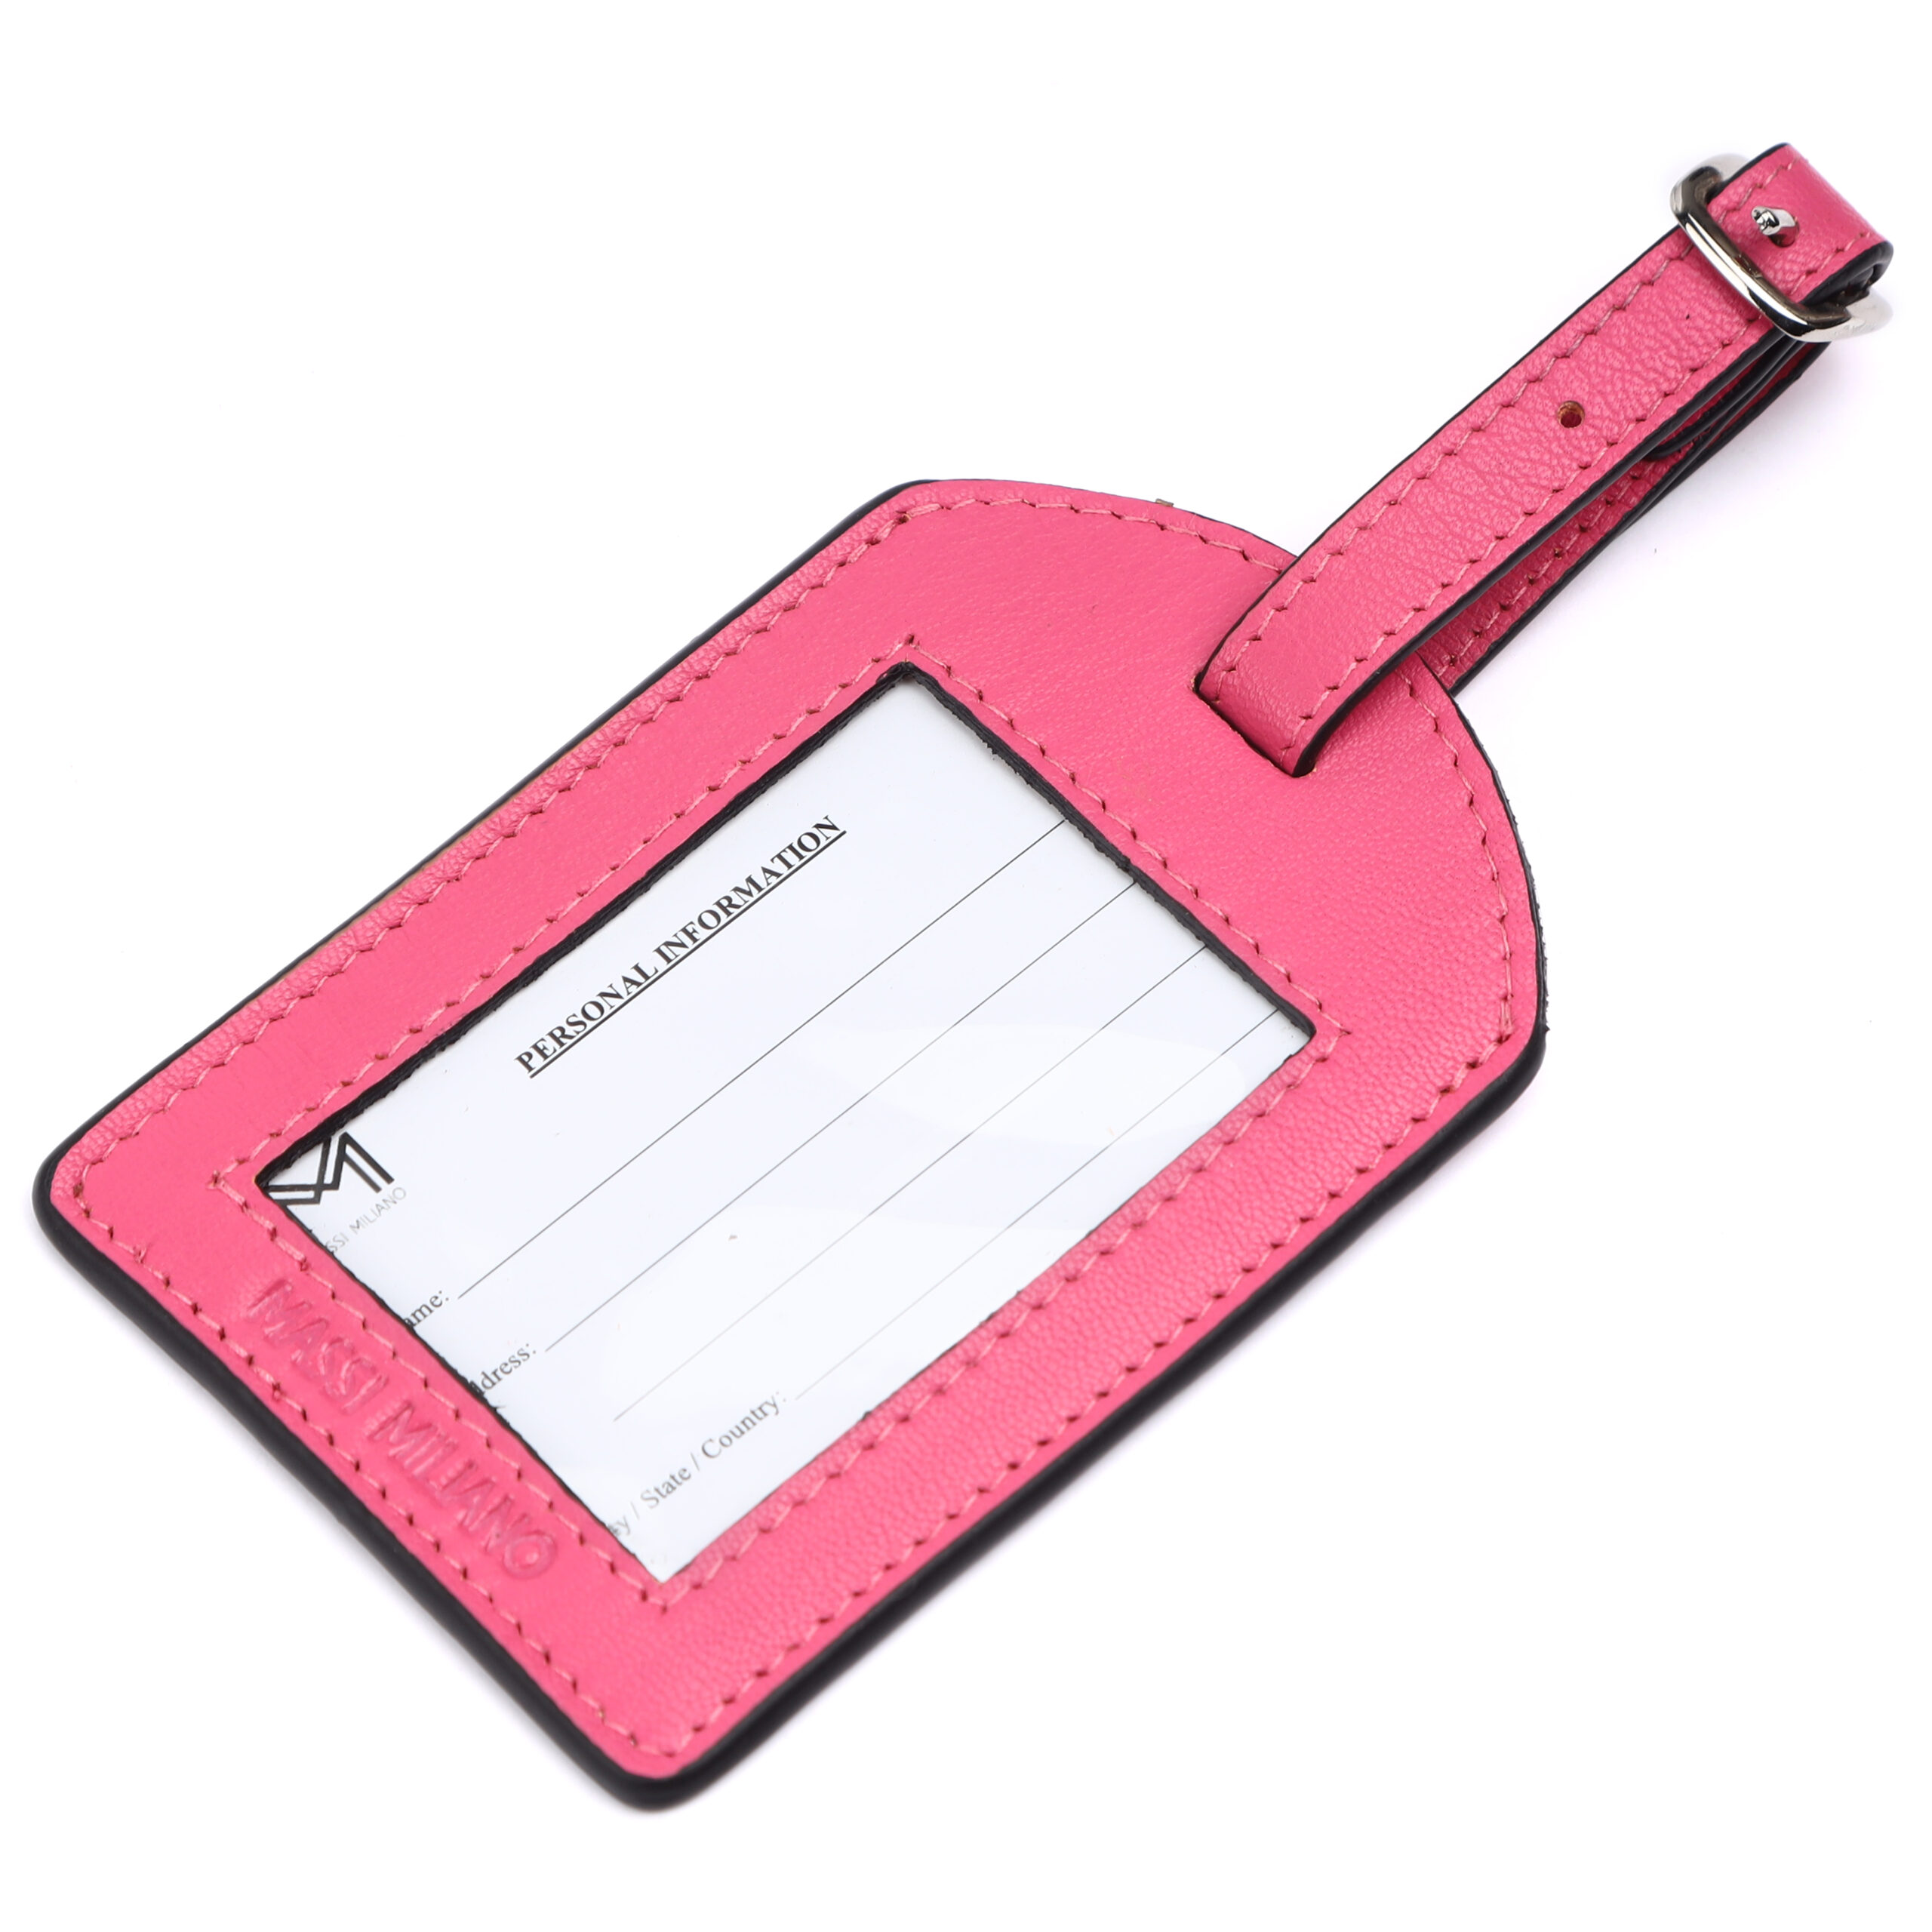 Luggage Tag – Pretty Pink